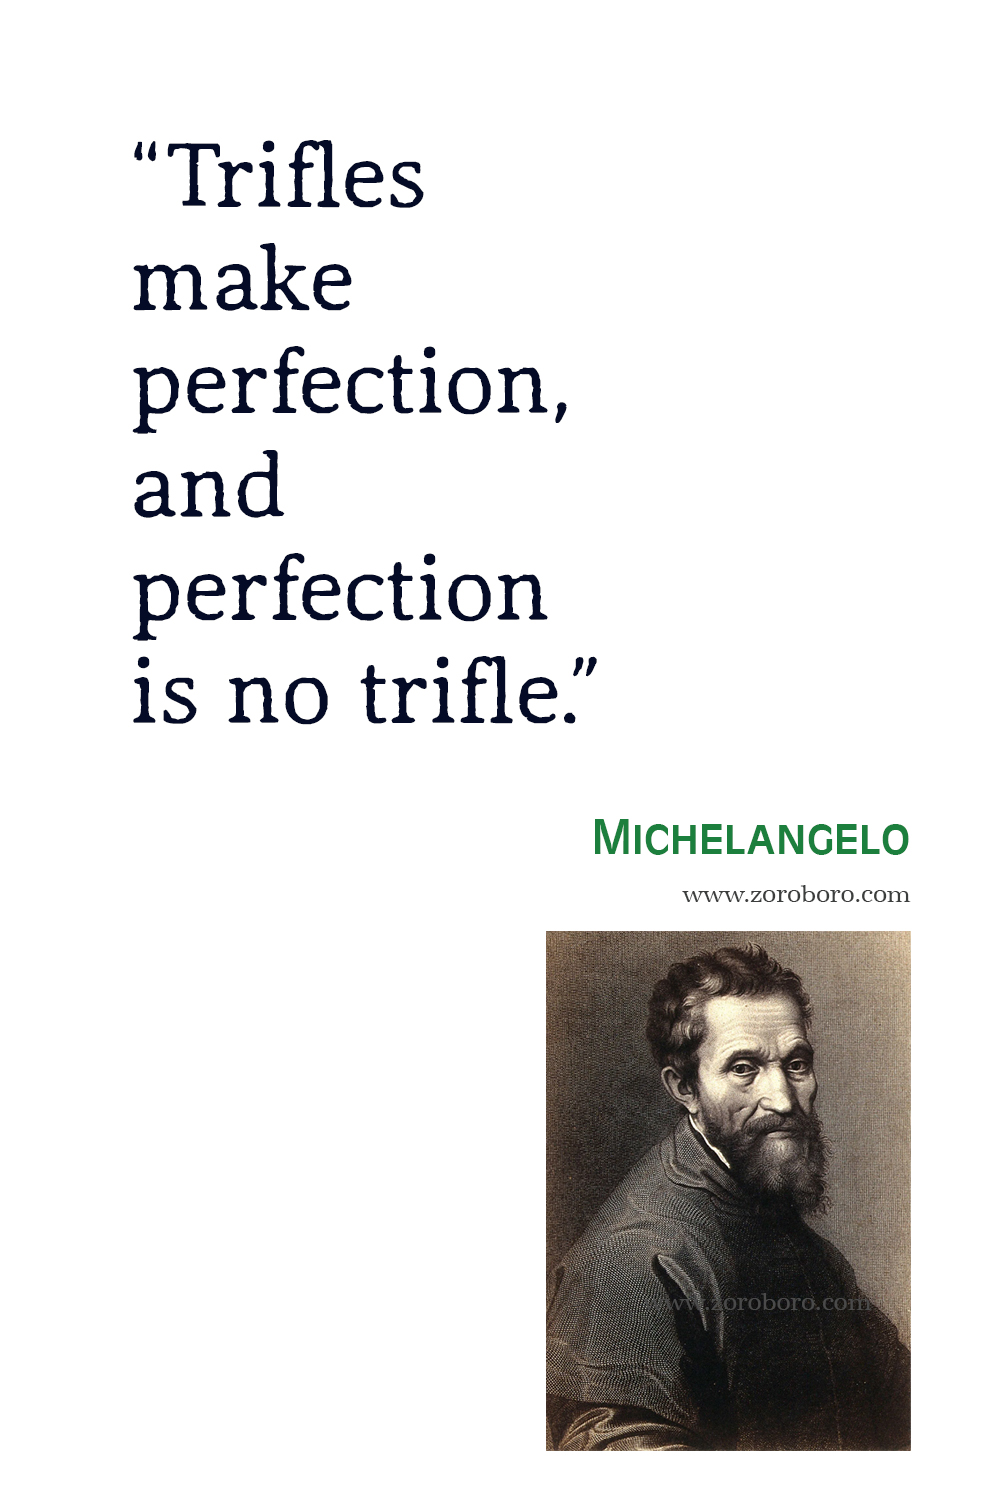 Michelangelo Quotes, Michelangelo Art, Michelangelo Inspirational, Michelangelo Painting, Michelangelo Perfection, Michelangelo Quotes.